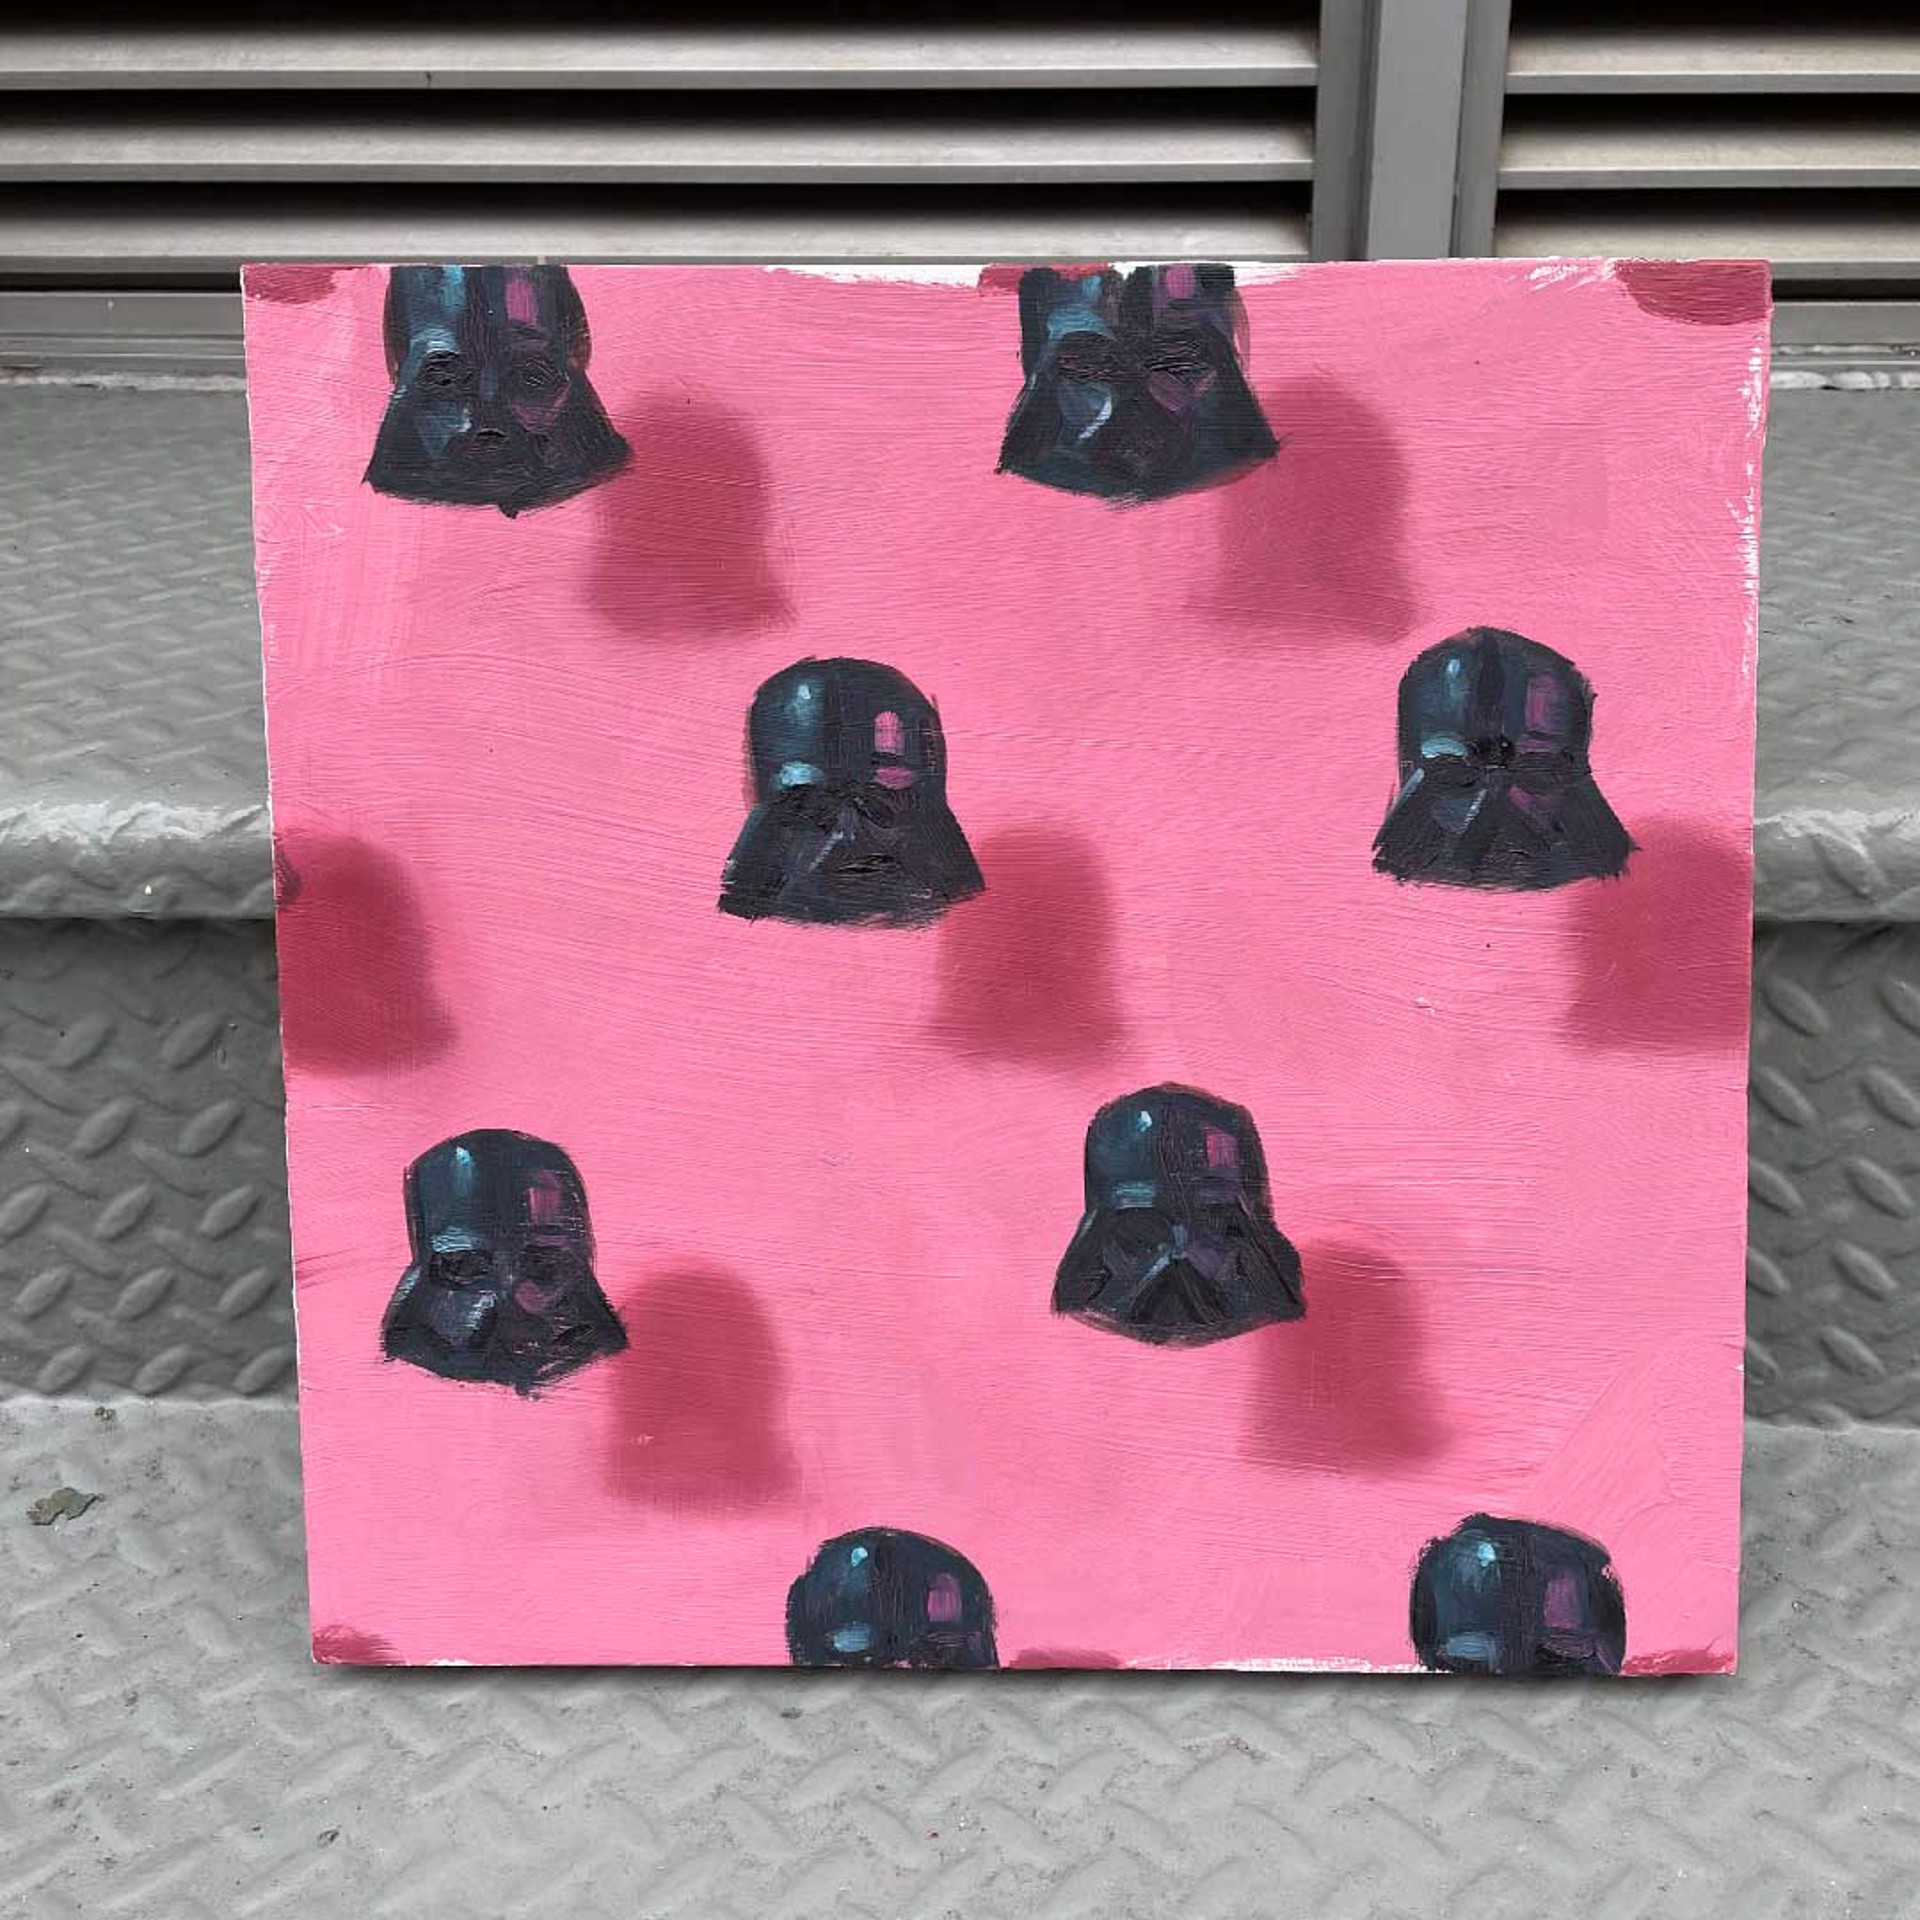 Vaders on pink by Dan Pelonis